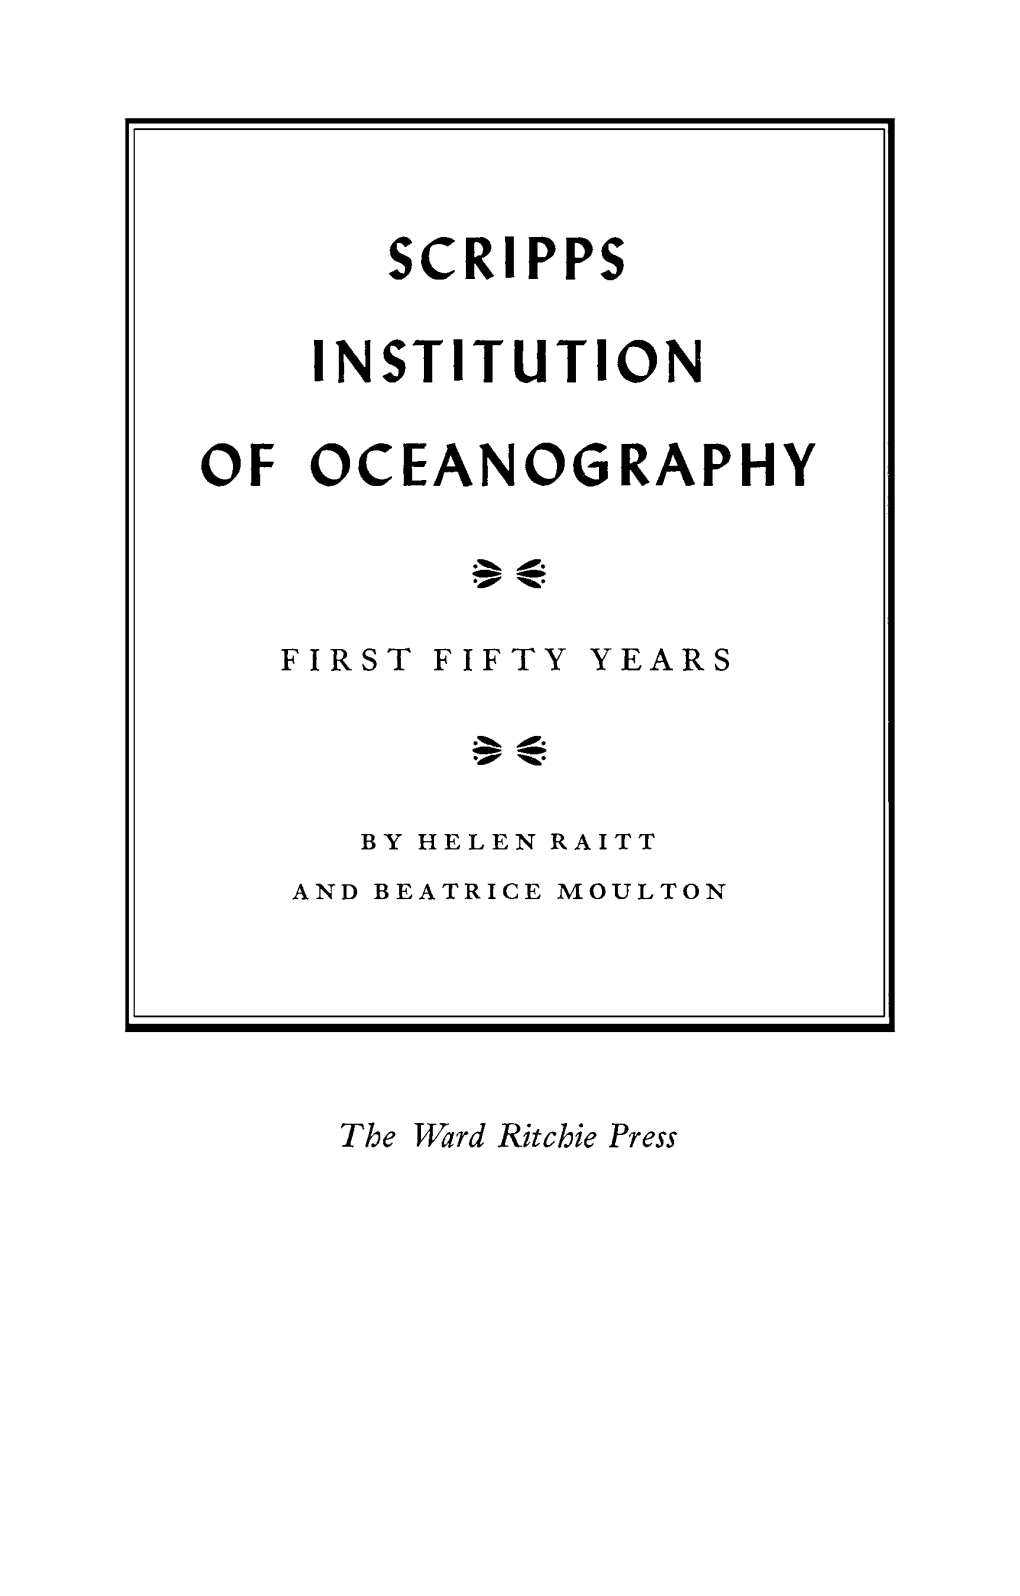 Scri Pps Institution of Oceanography